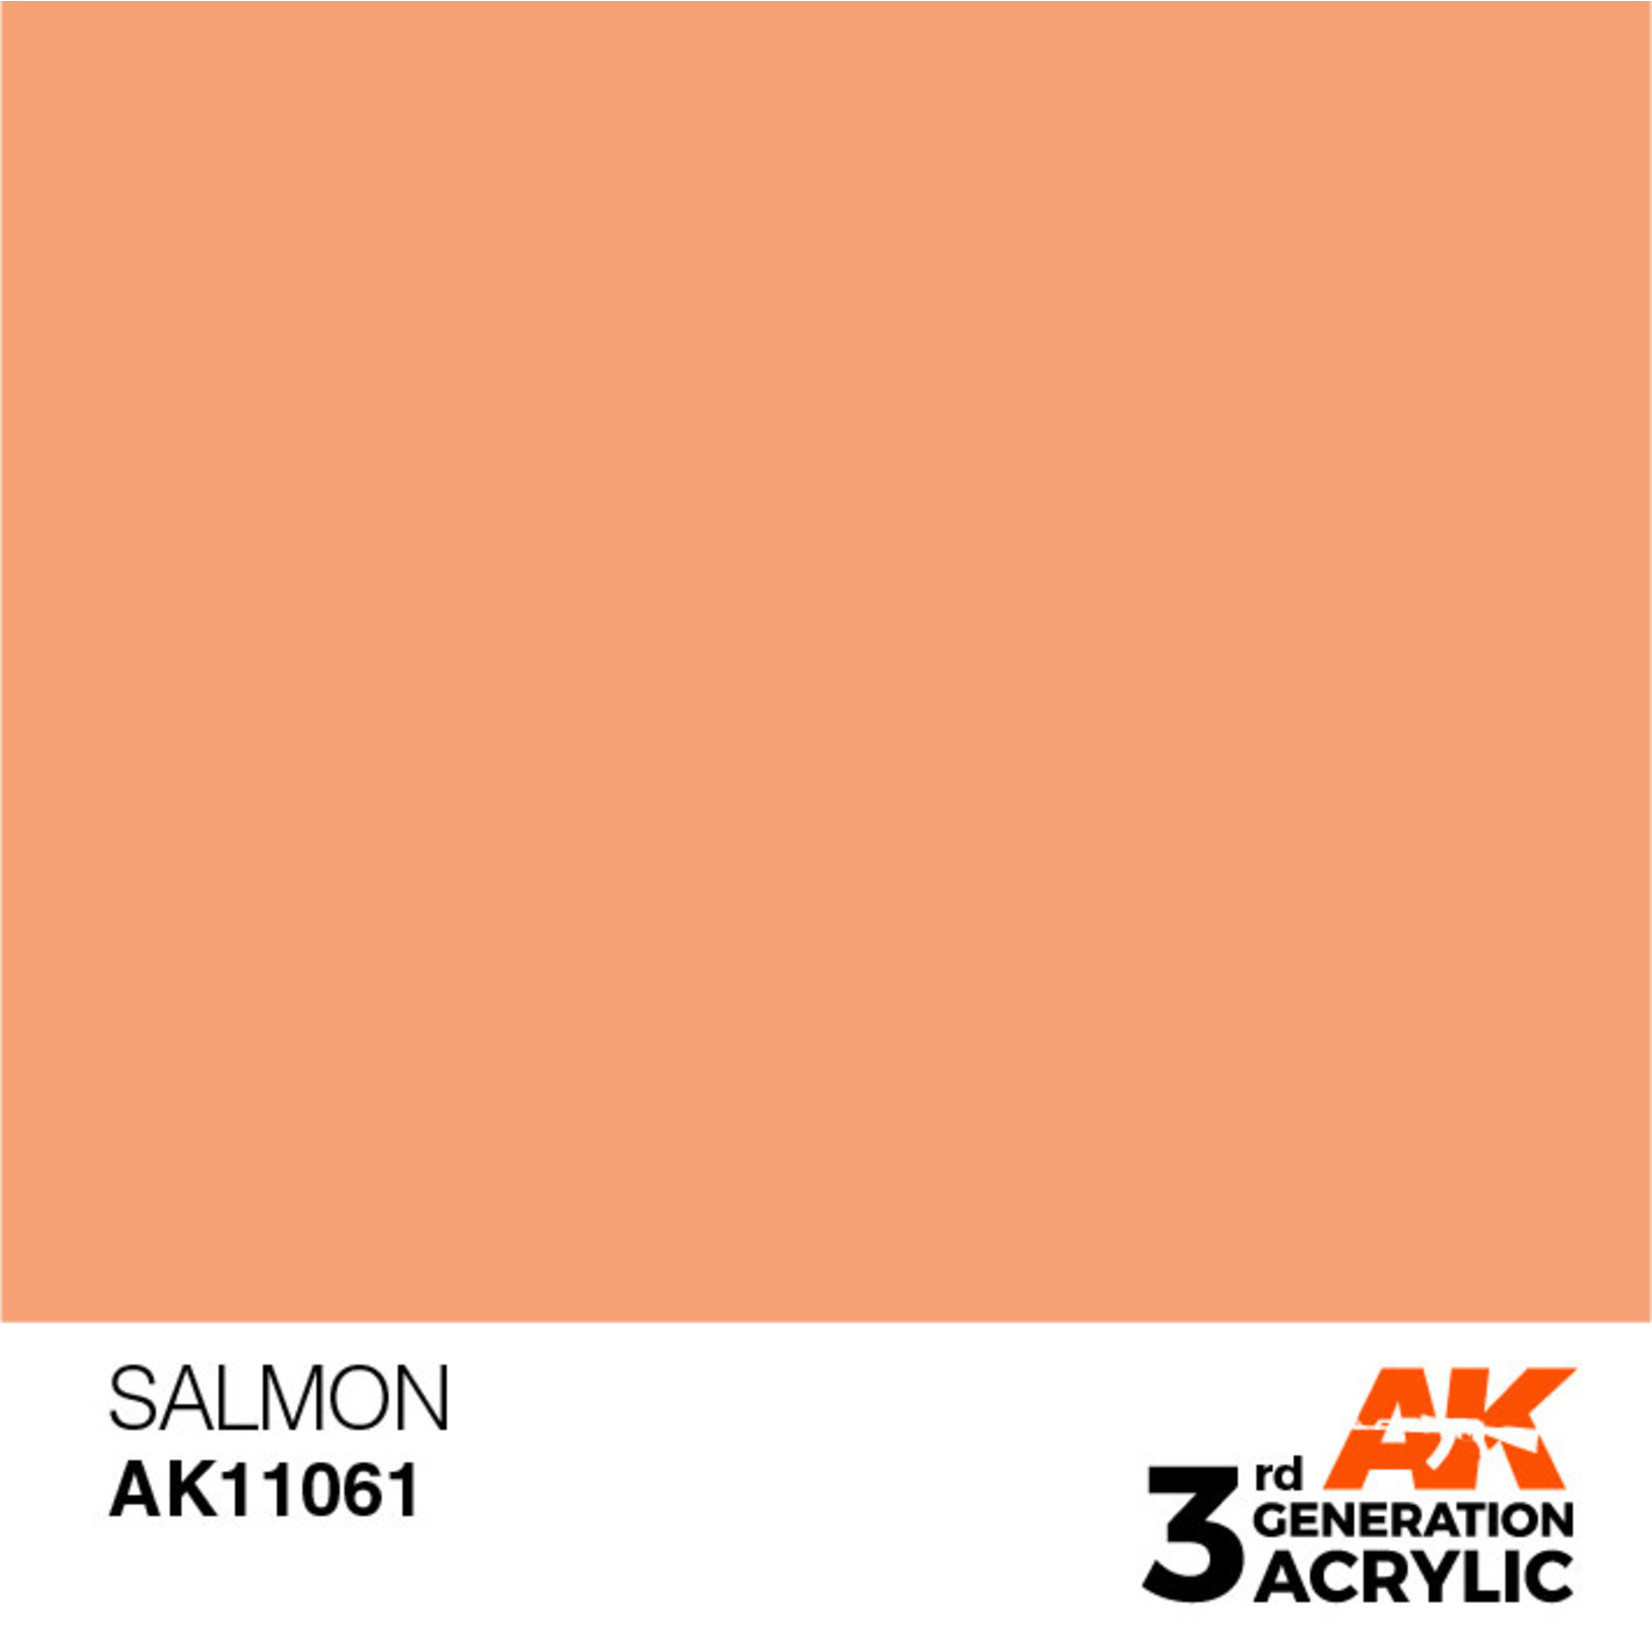 AK Interactive AK11061 3G Acrylic Salmon 17ml